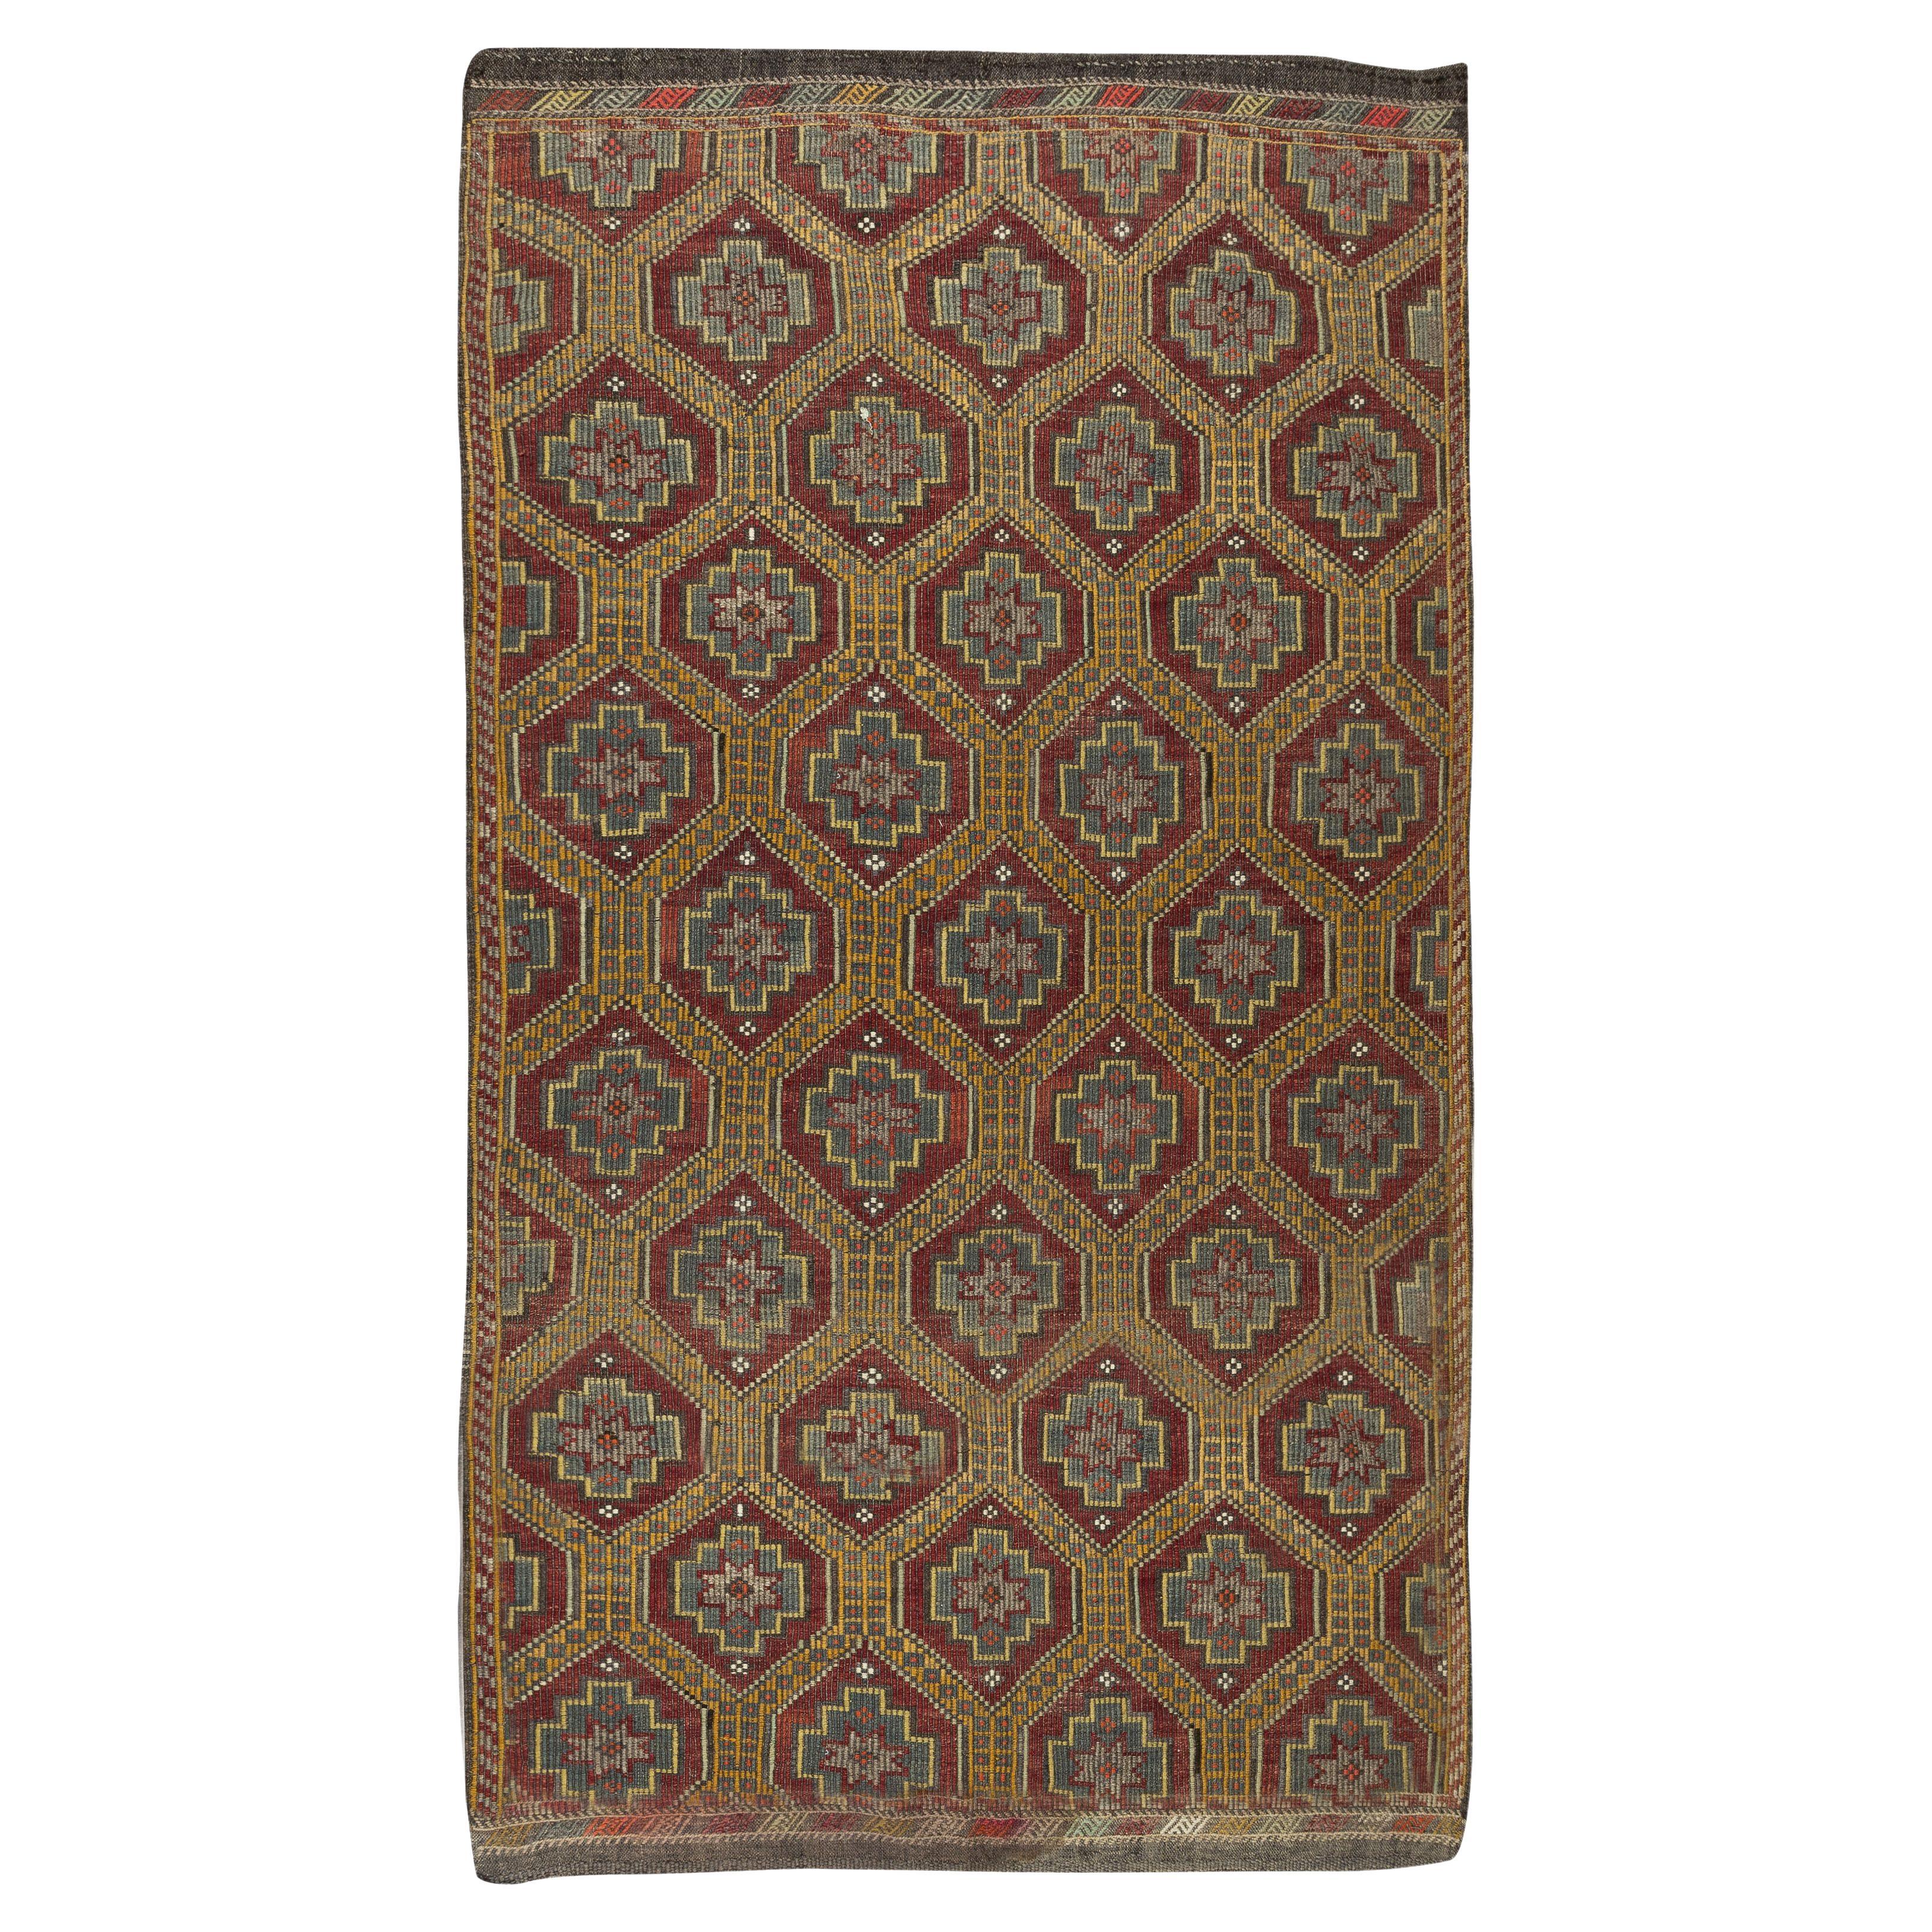 5.5x9.4 Ft Vintage Turkish Jijim Kilim, Floral Pattern Hand-Woven Rug, 100% Wool en vente